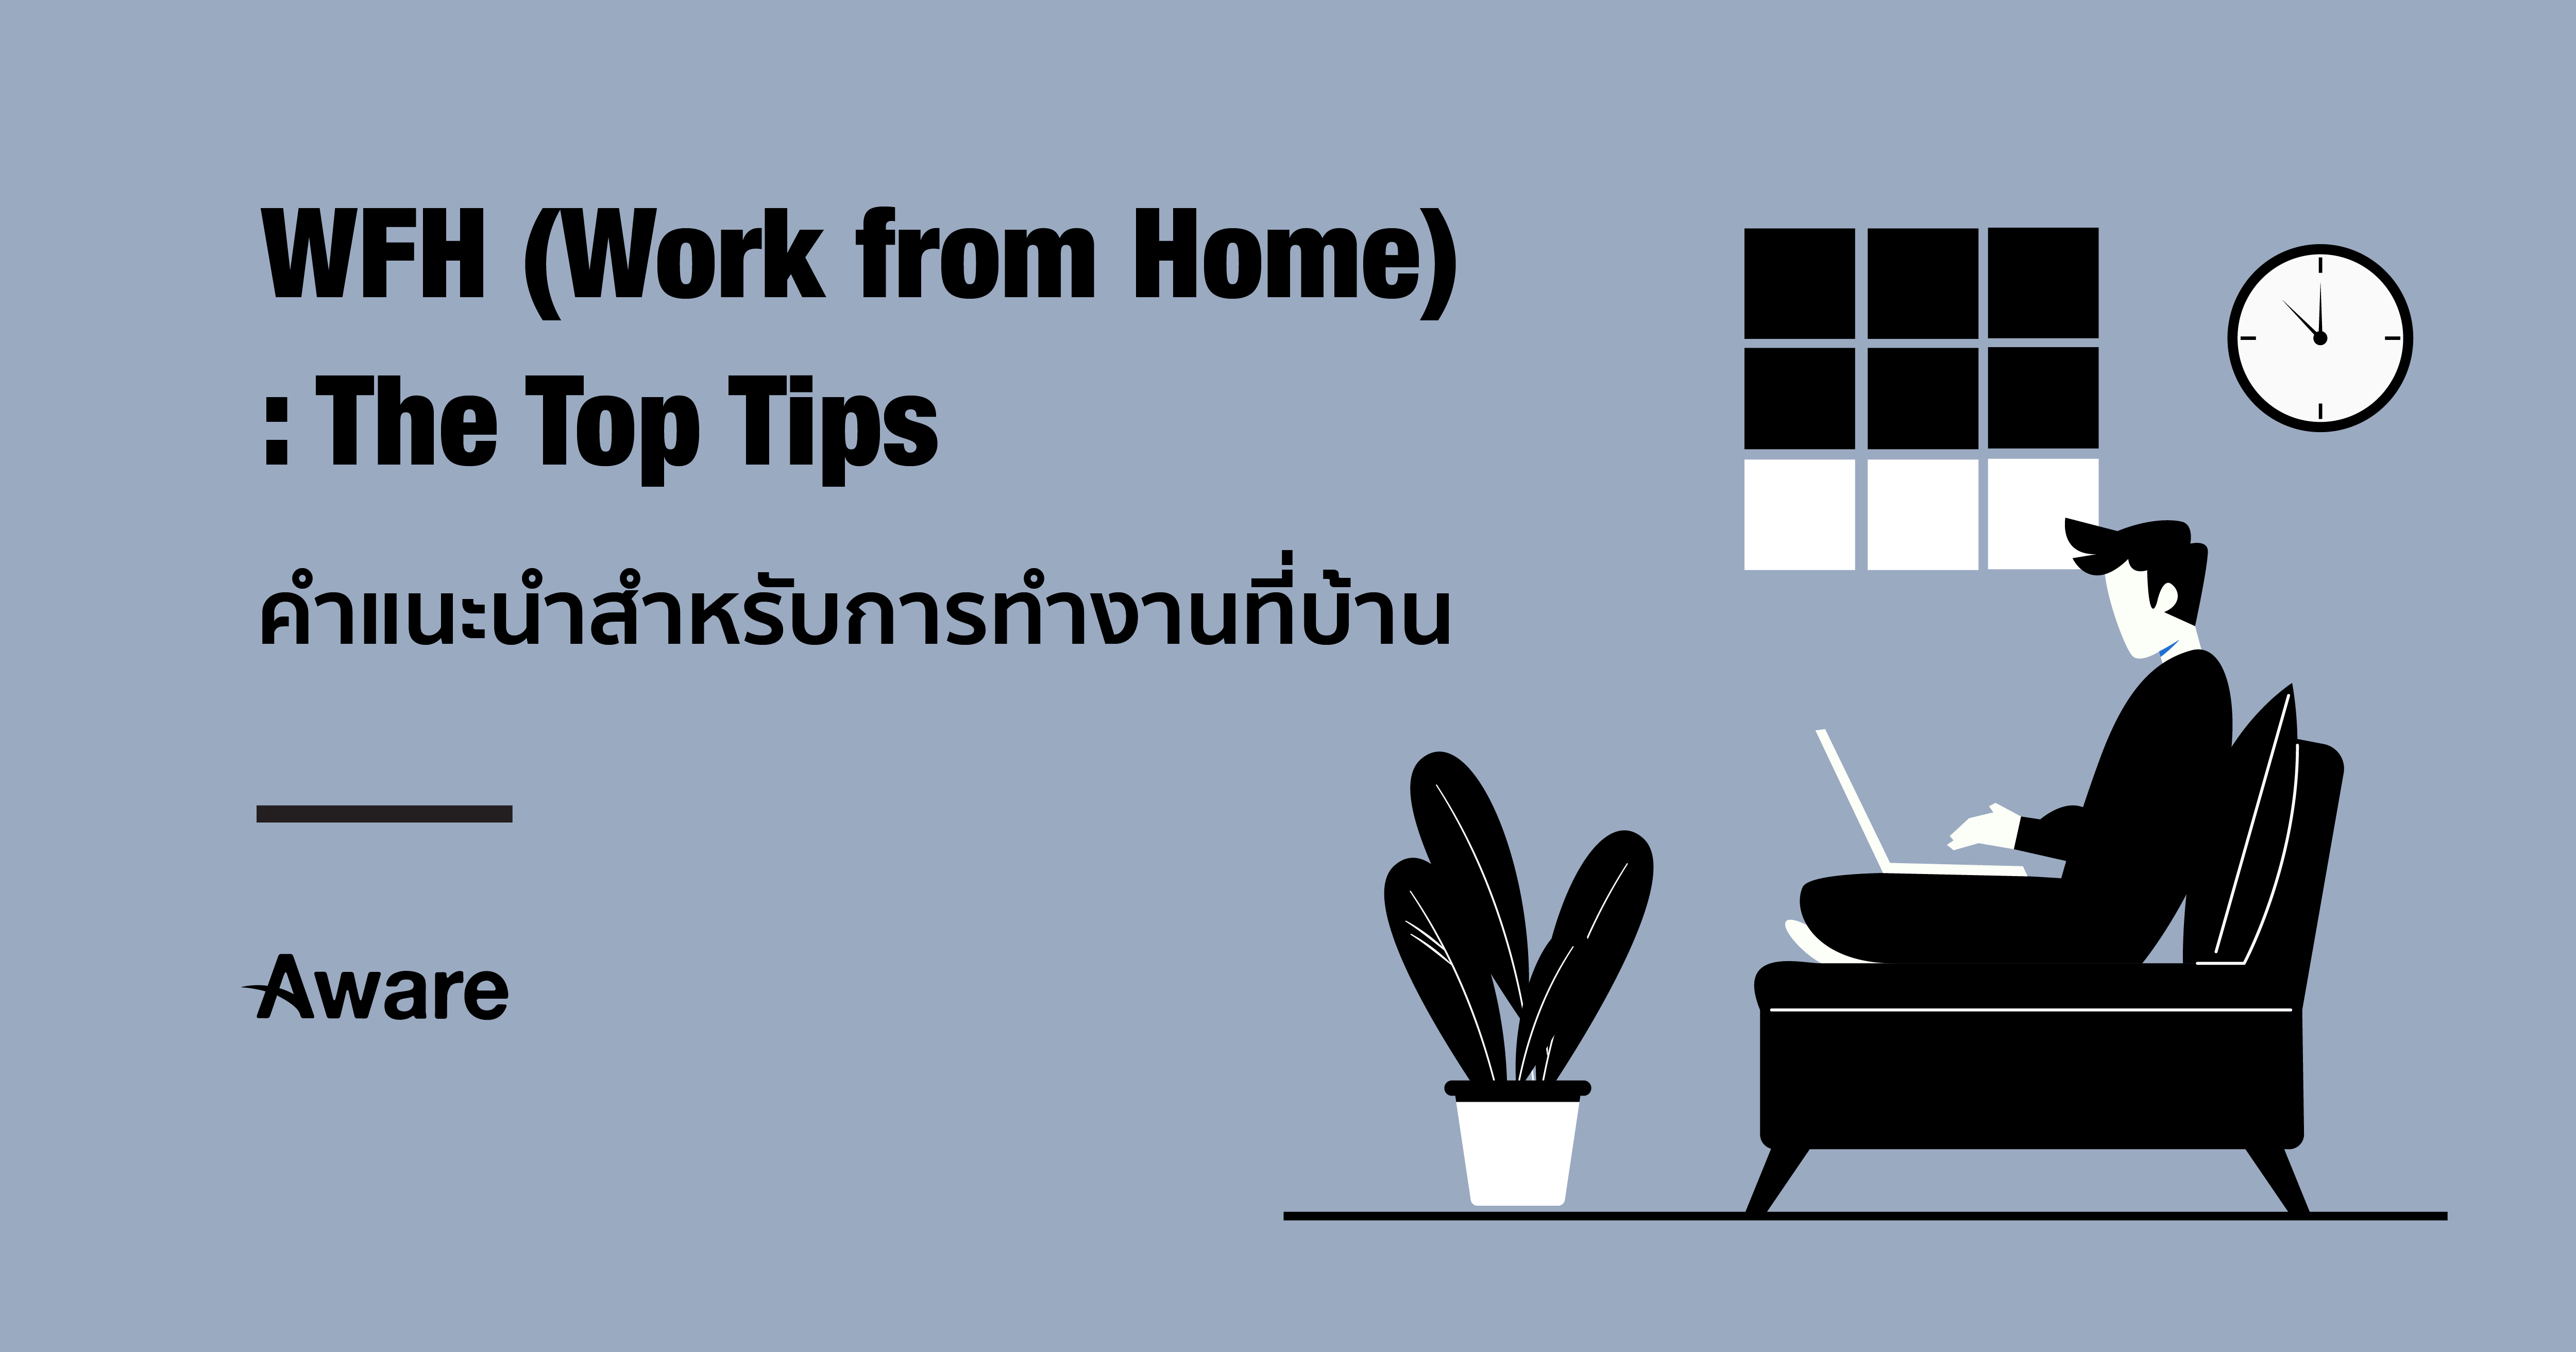 WFH (Work from Home): The Top Tips | คำแนะนำสำหรับการทำงานที่บ้าน